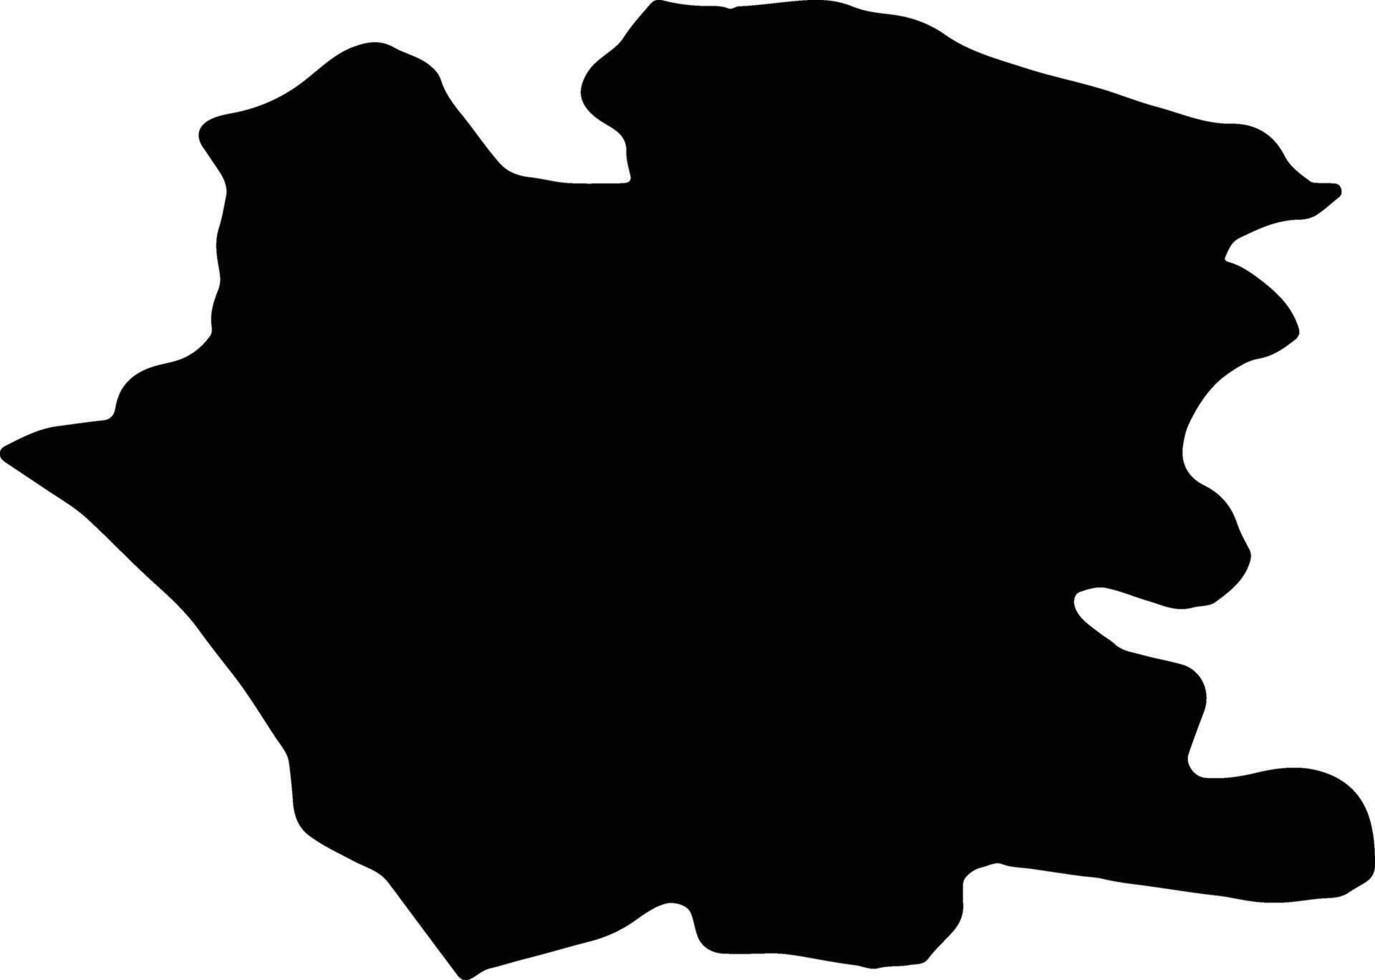 caserta Italia silhouette carta geografica vettore